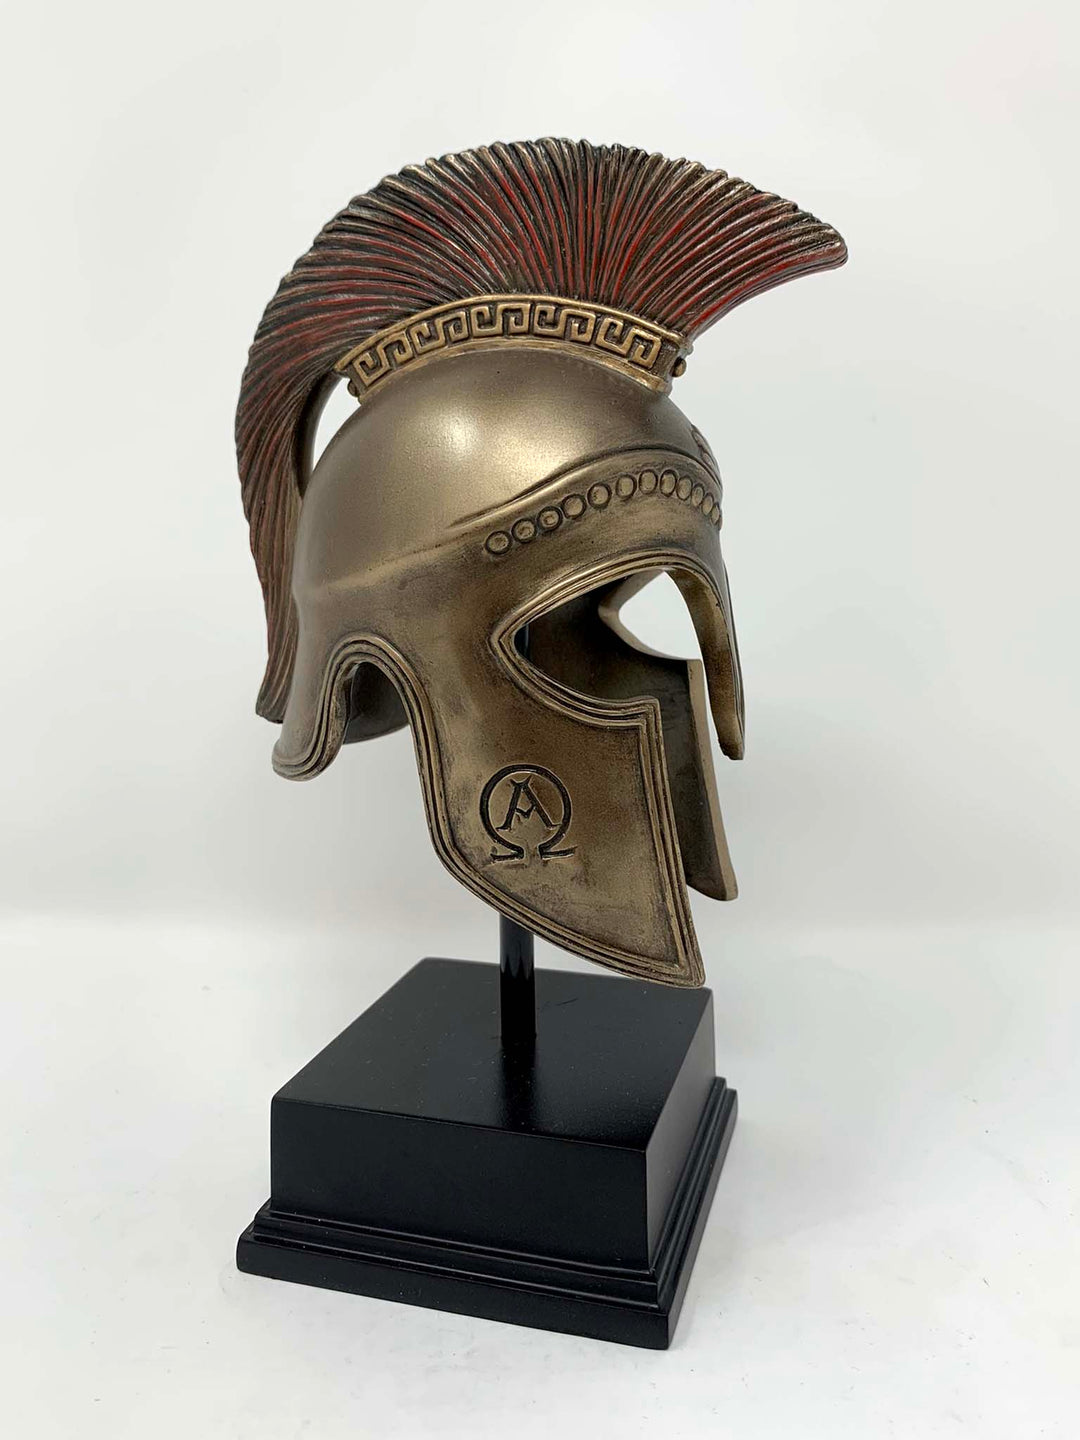 Beautifully sculptured Greek Spartan hoplite helmet on display